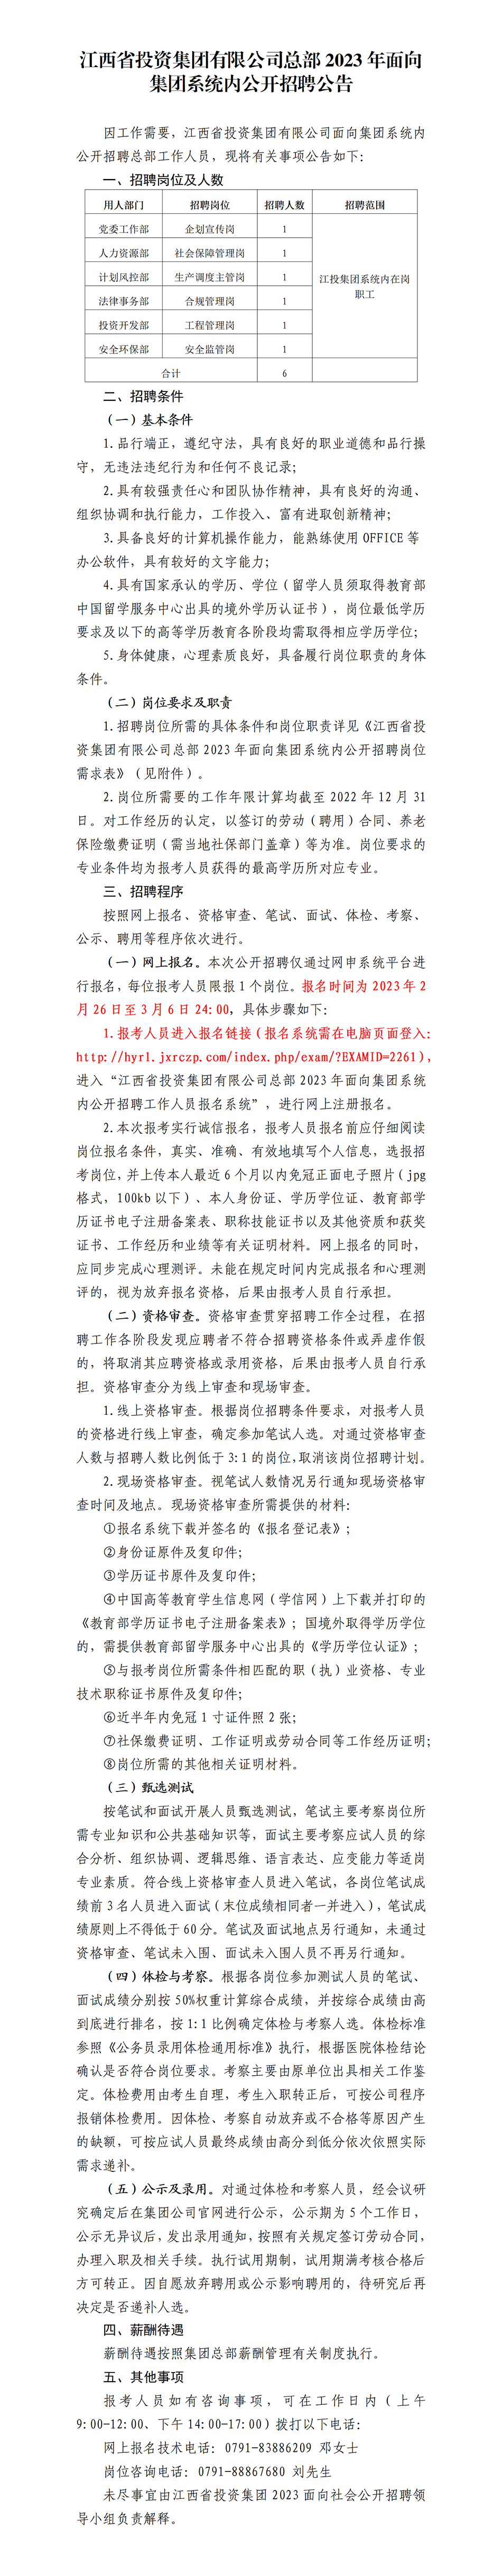 亚娱体育在线（中国）有限公司总部2023年面向集团系统内公开招聘公告.png